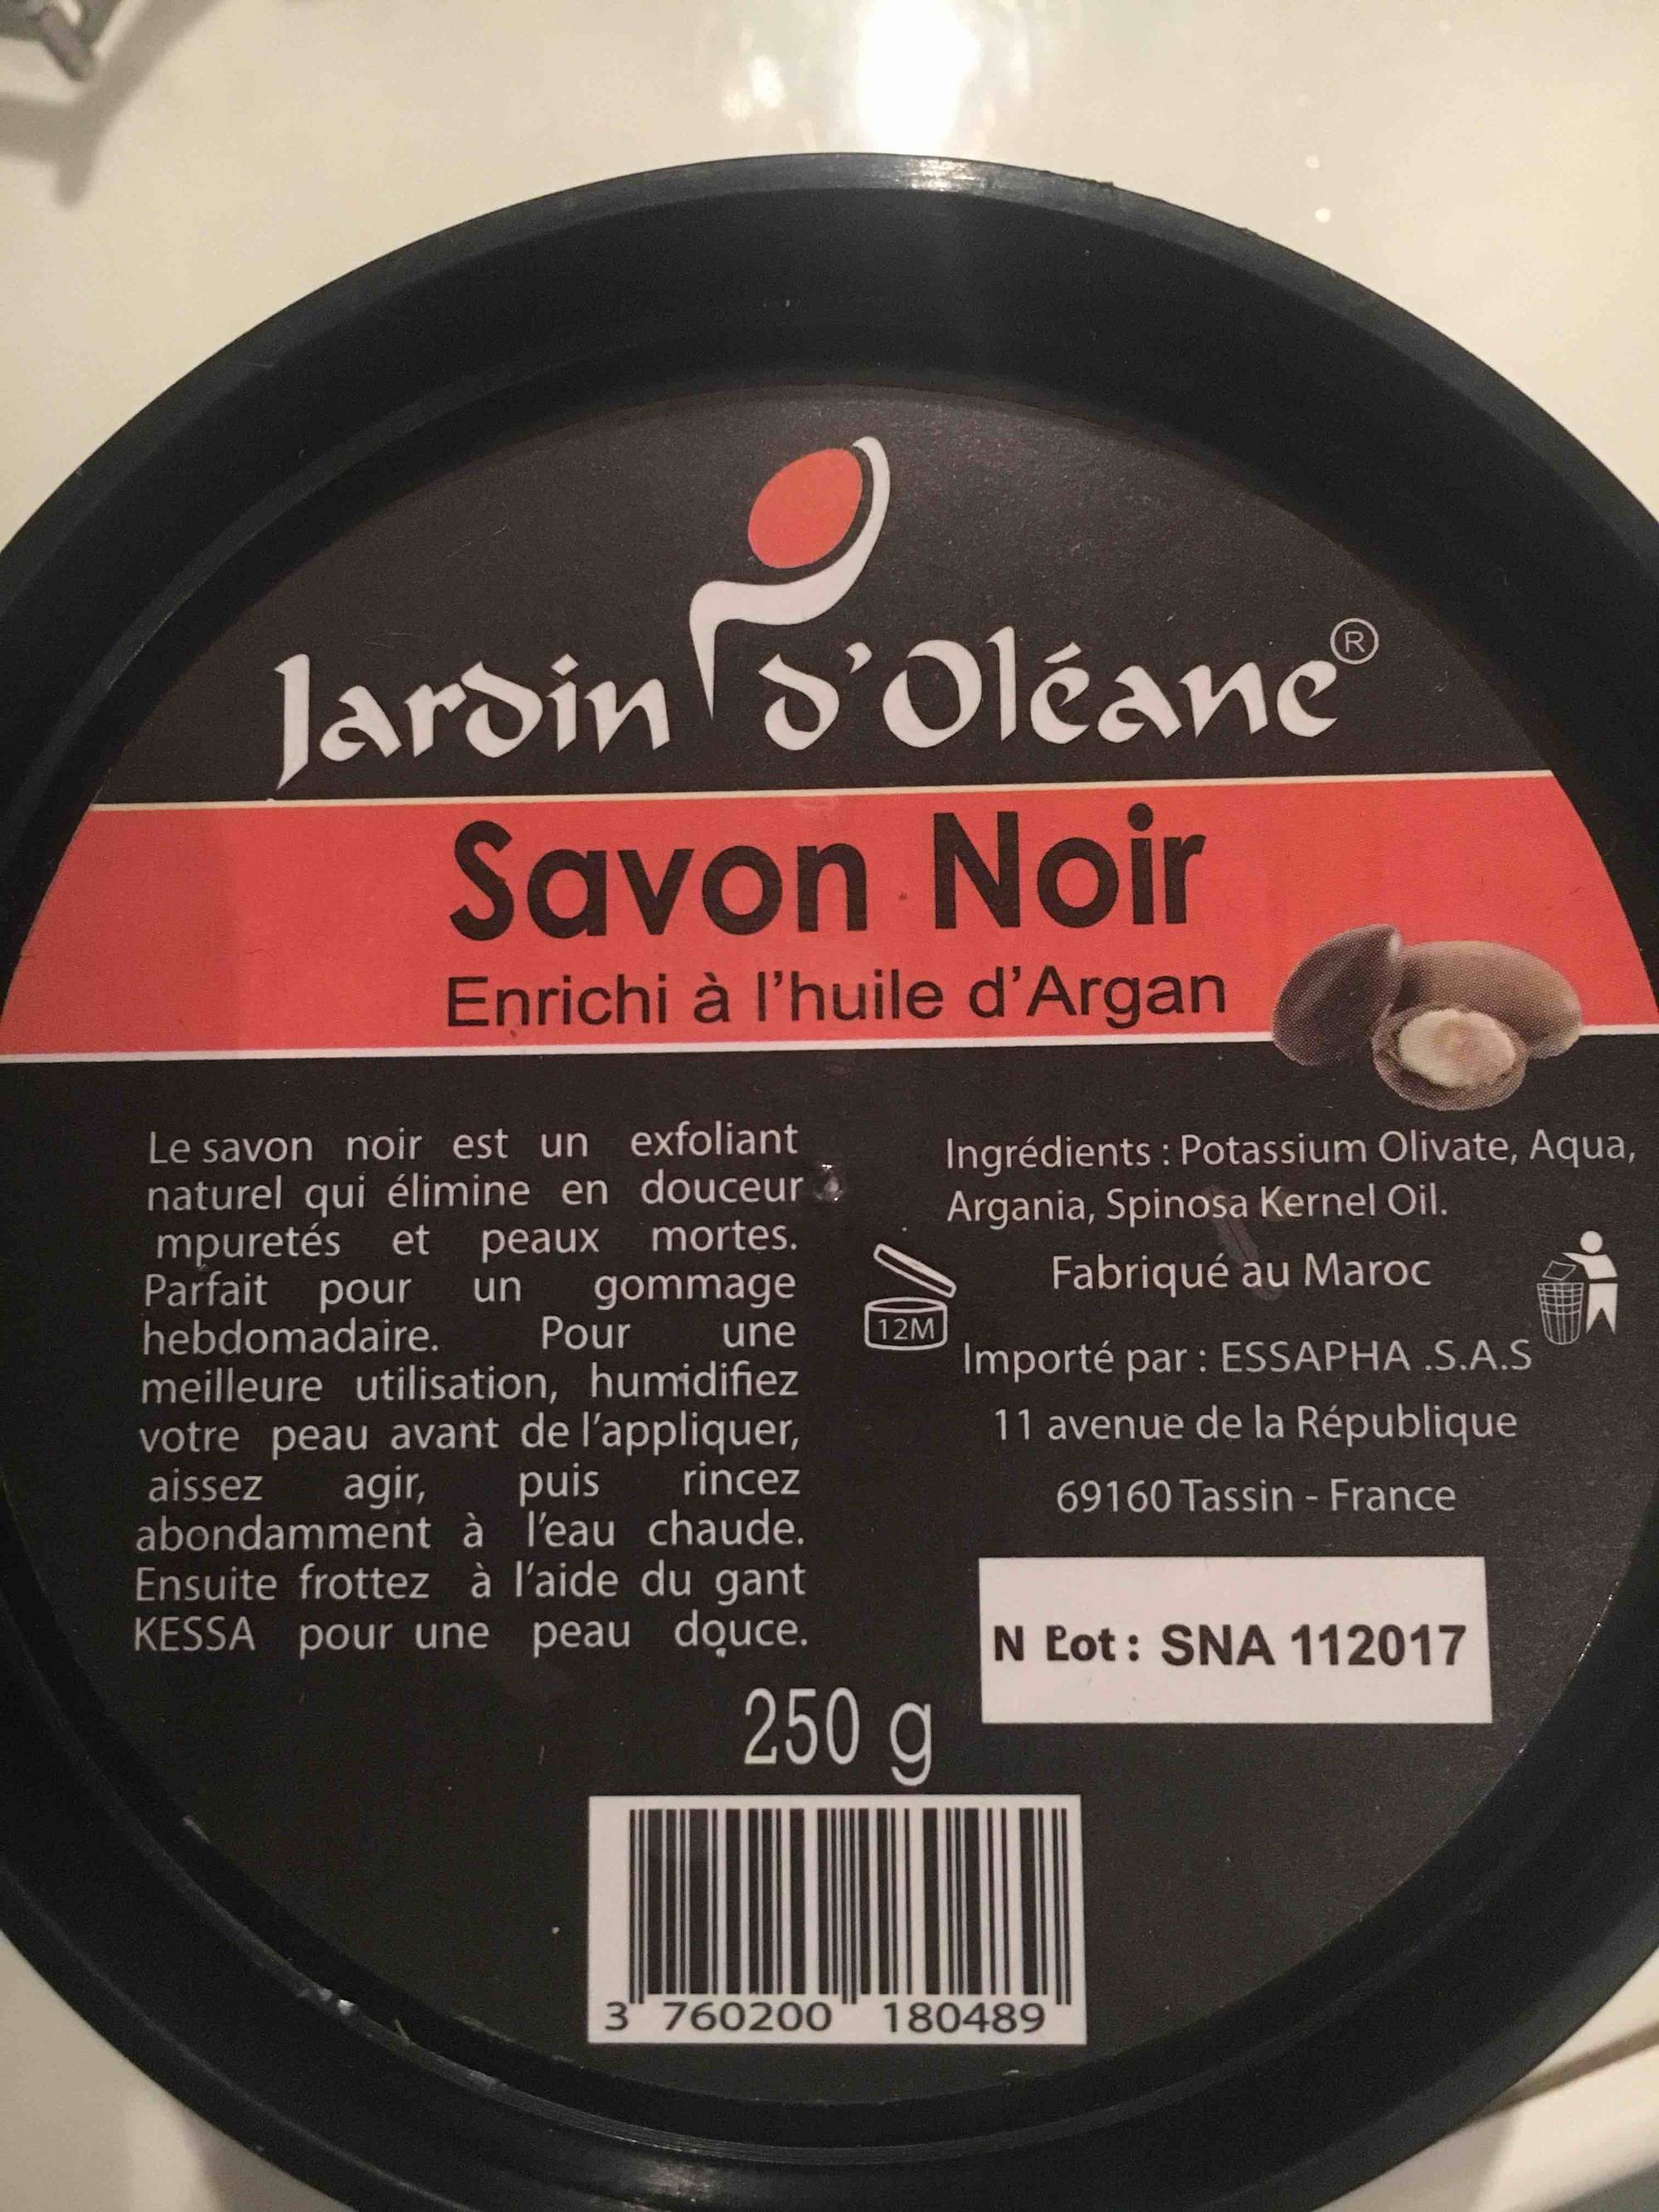 JARDIN D'OLÉANE - Savon noir enrichi à l'huile d'argan